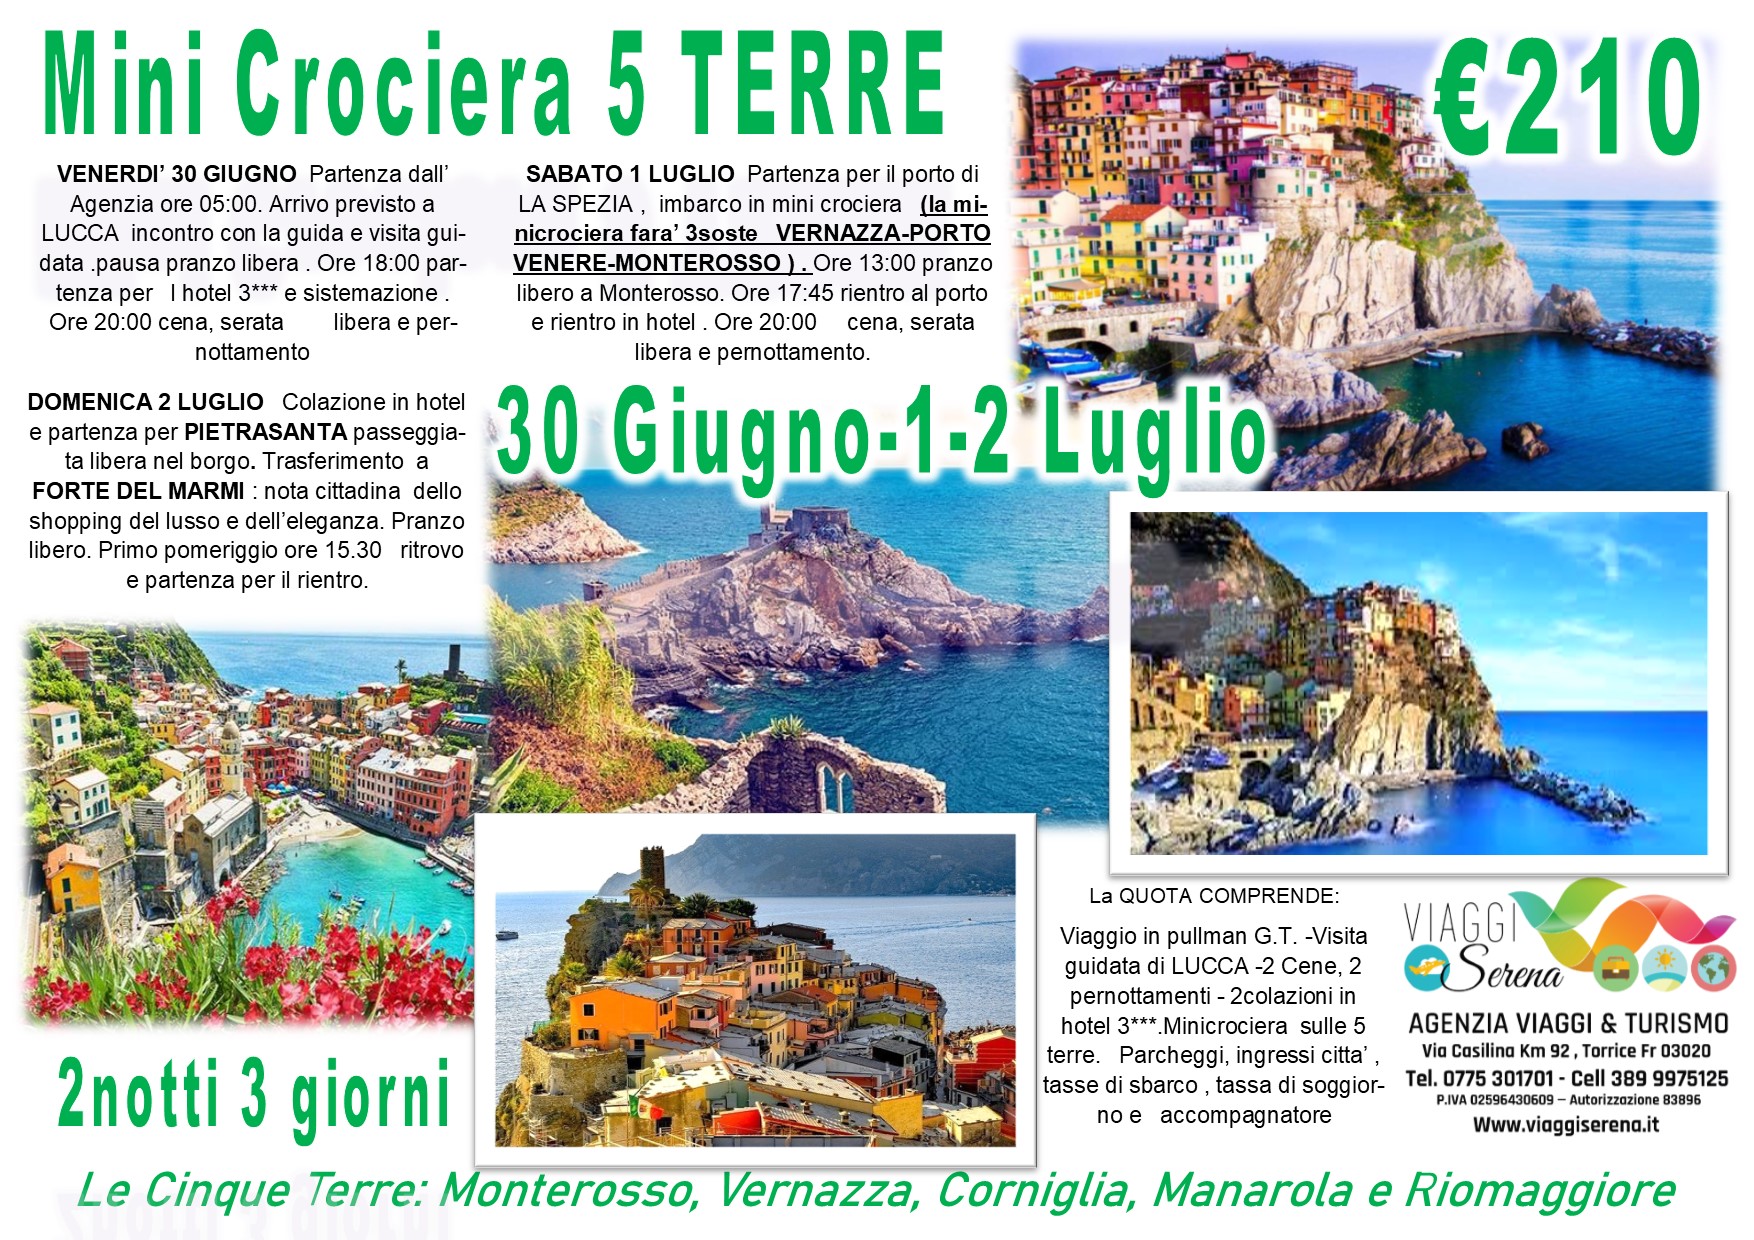 Viaggi di Gruppo: Mini Crociera delle “Cinque Terre”, Lucca, Forte dei Marmi & Pietrasanta 30 Giugno-1-2 Luglio €210,00